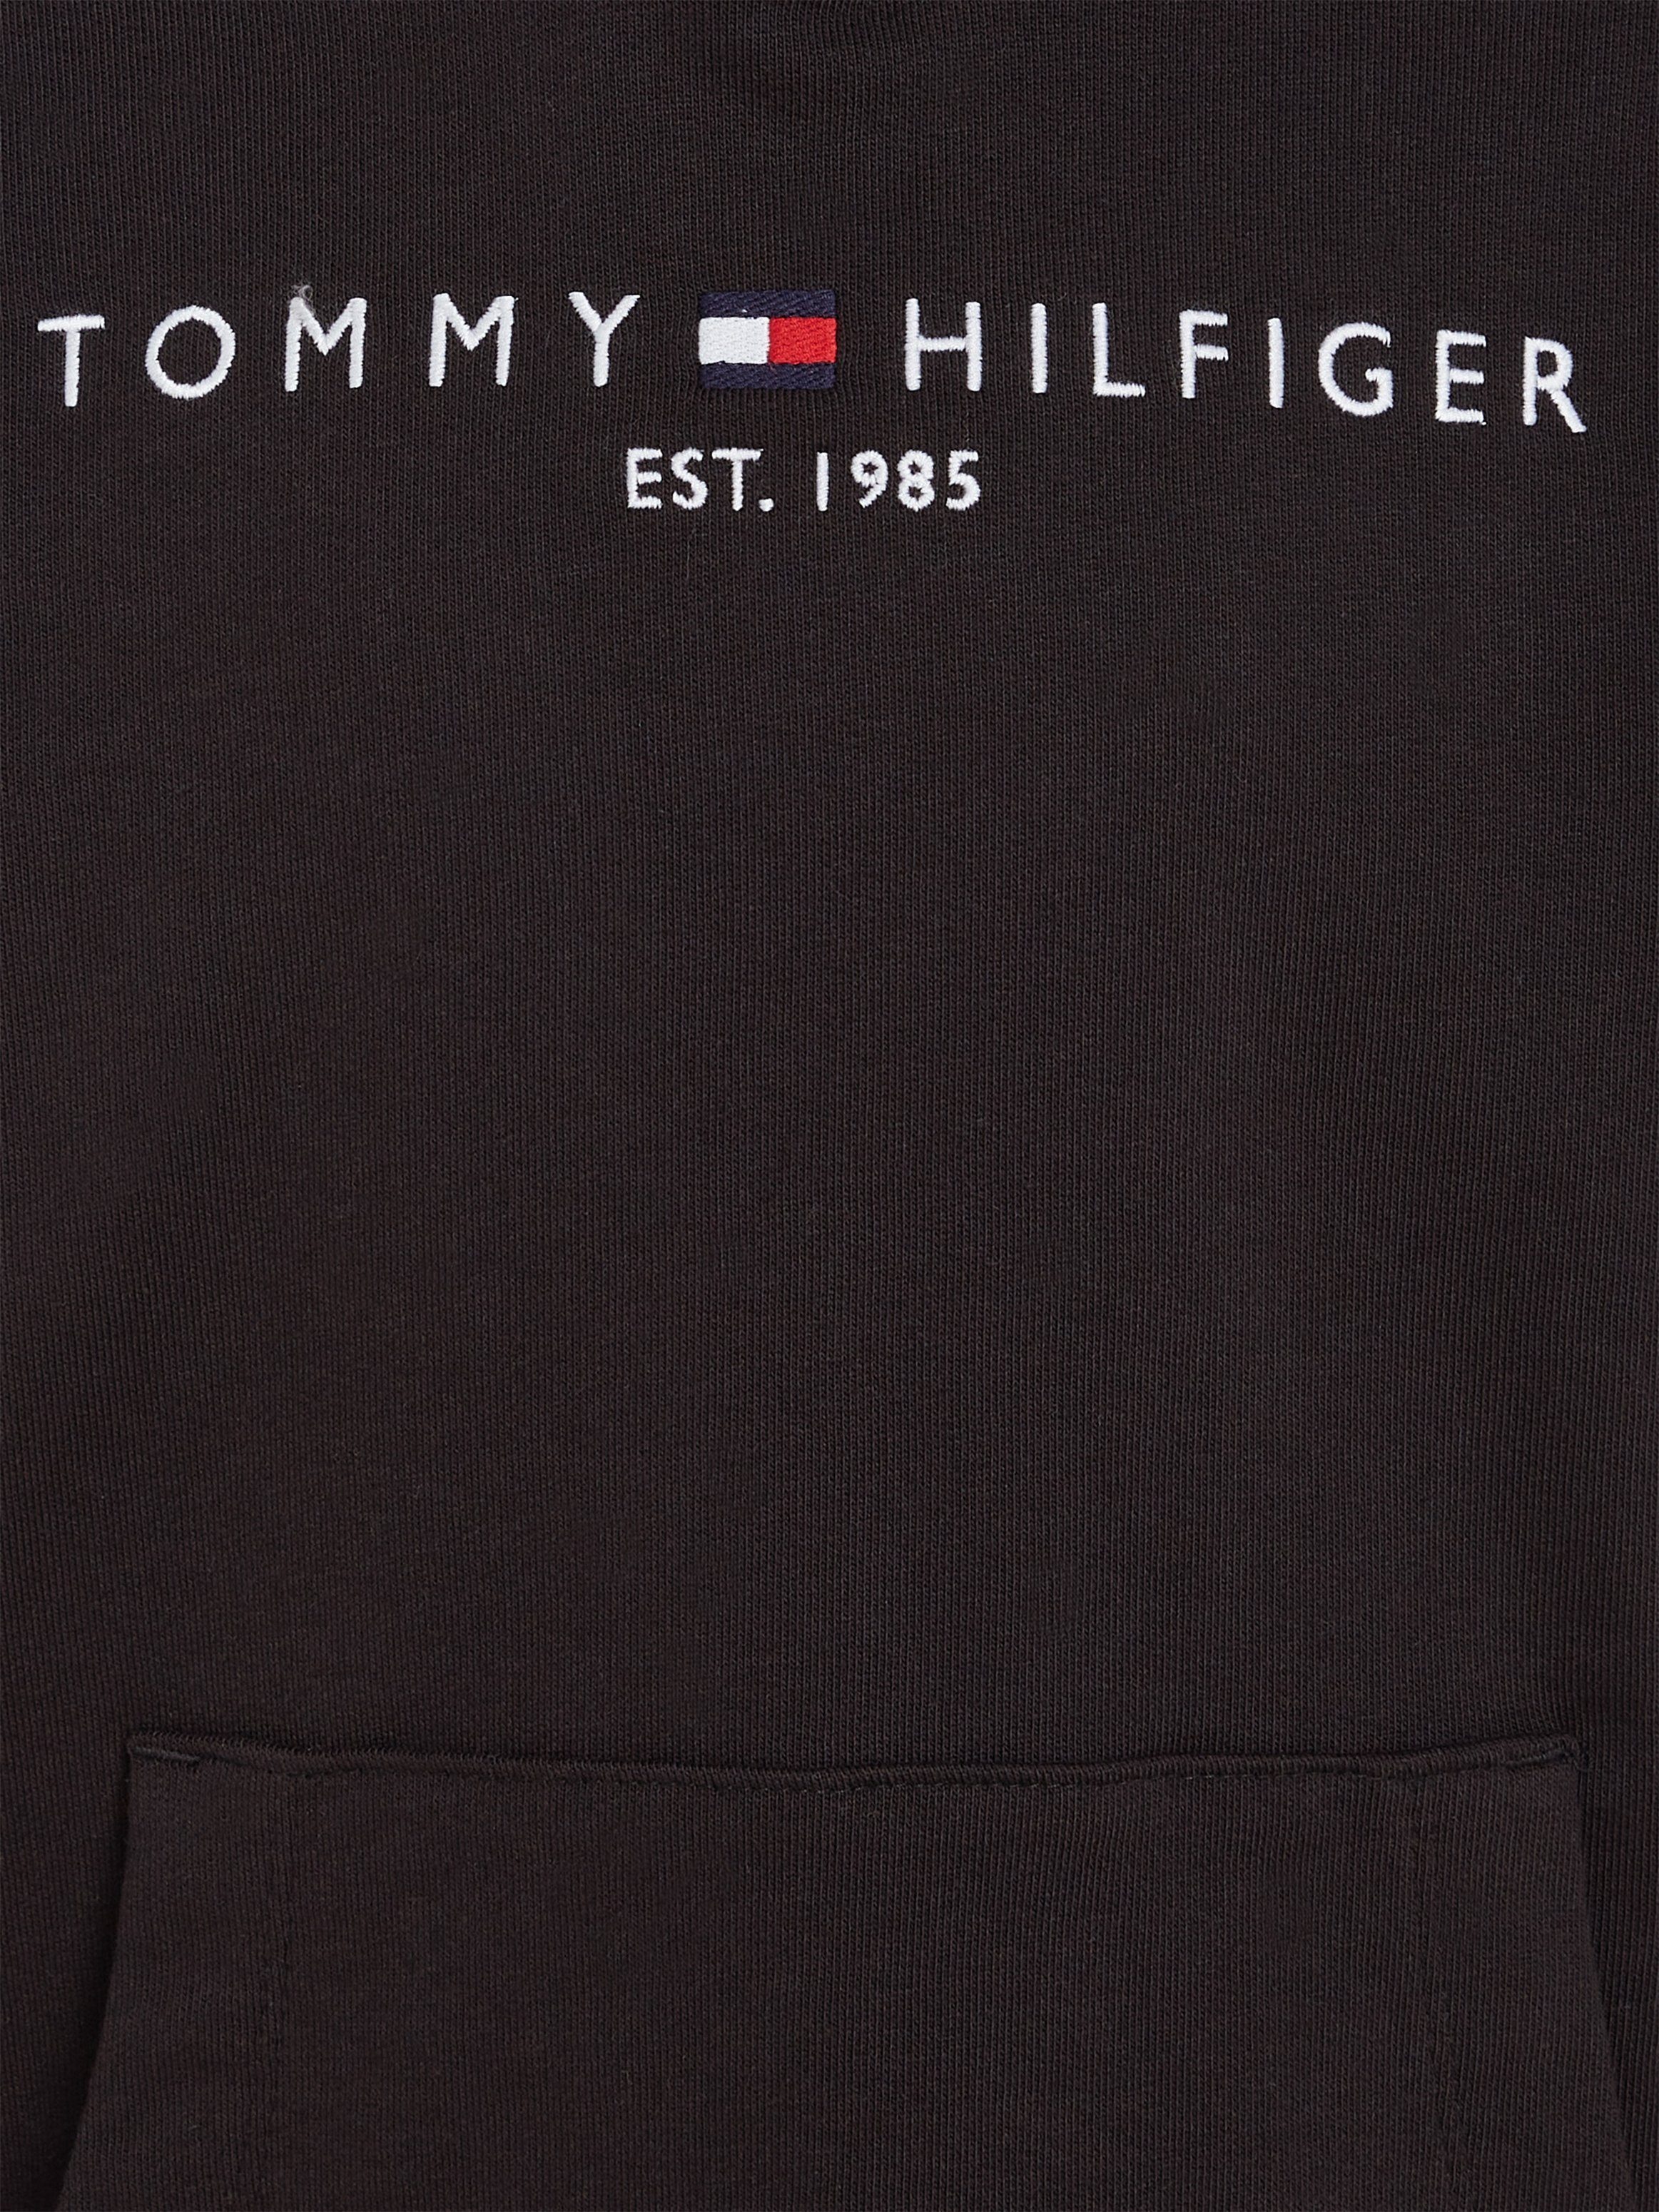 Tommy Hilfiger Kapuzensweatshirt MiniMe,für Junior Kids Jungen Kinder ESSENTIAL HOODIE und Mädchen